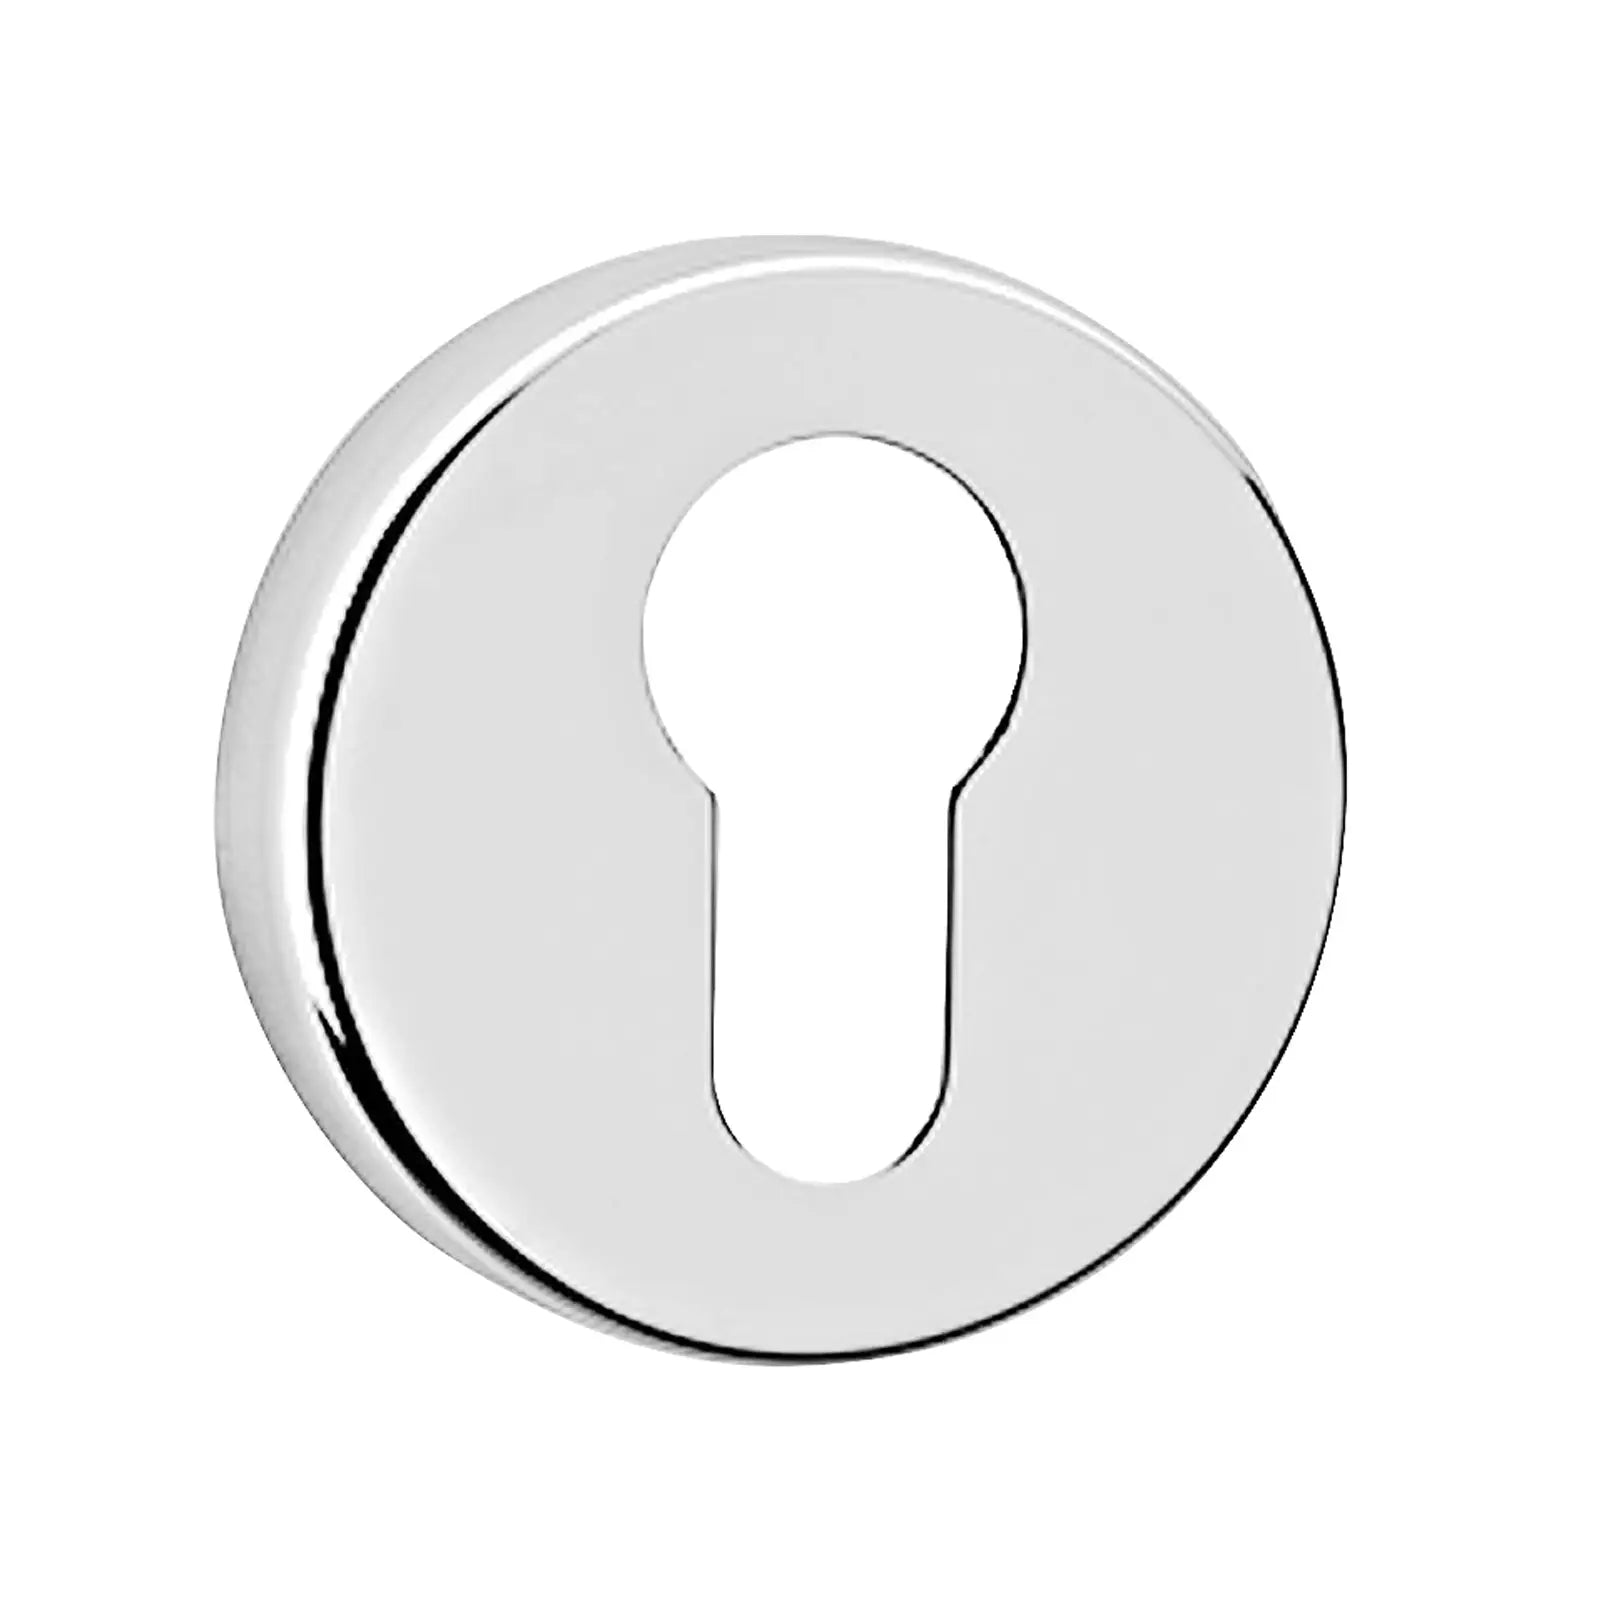 Euro Cylinder Keyhole Cover Escutcheon - Polished Chrome